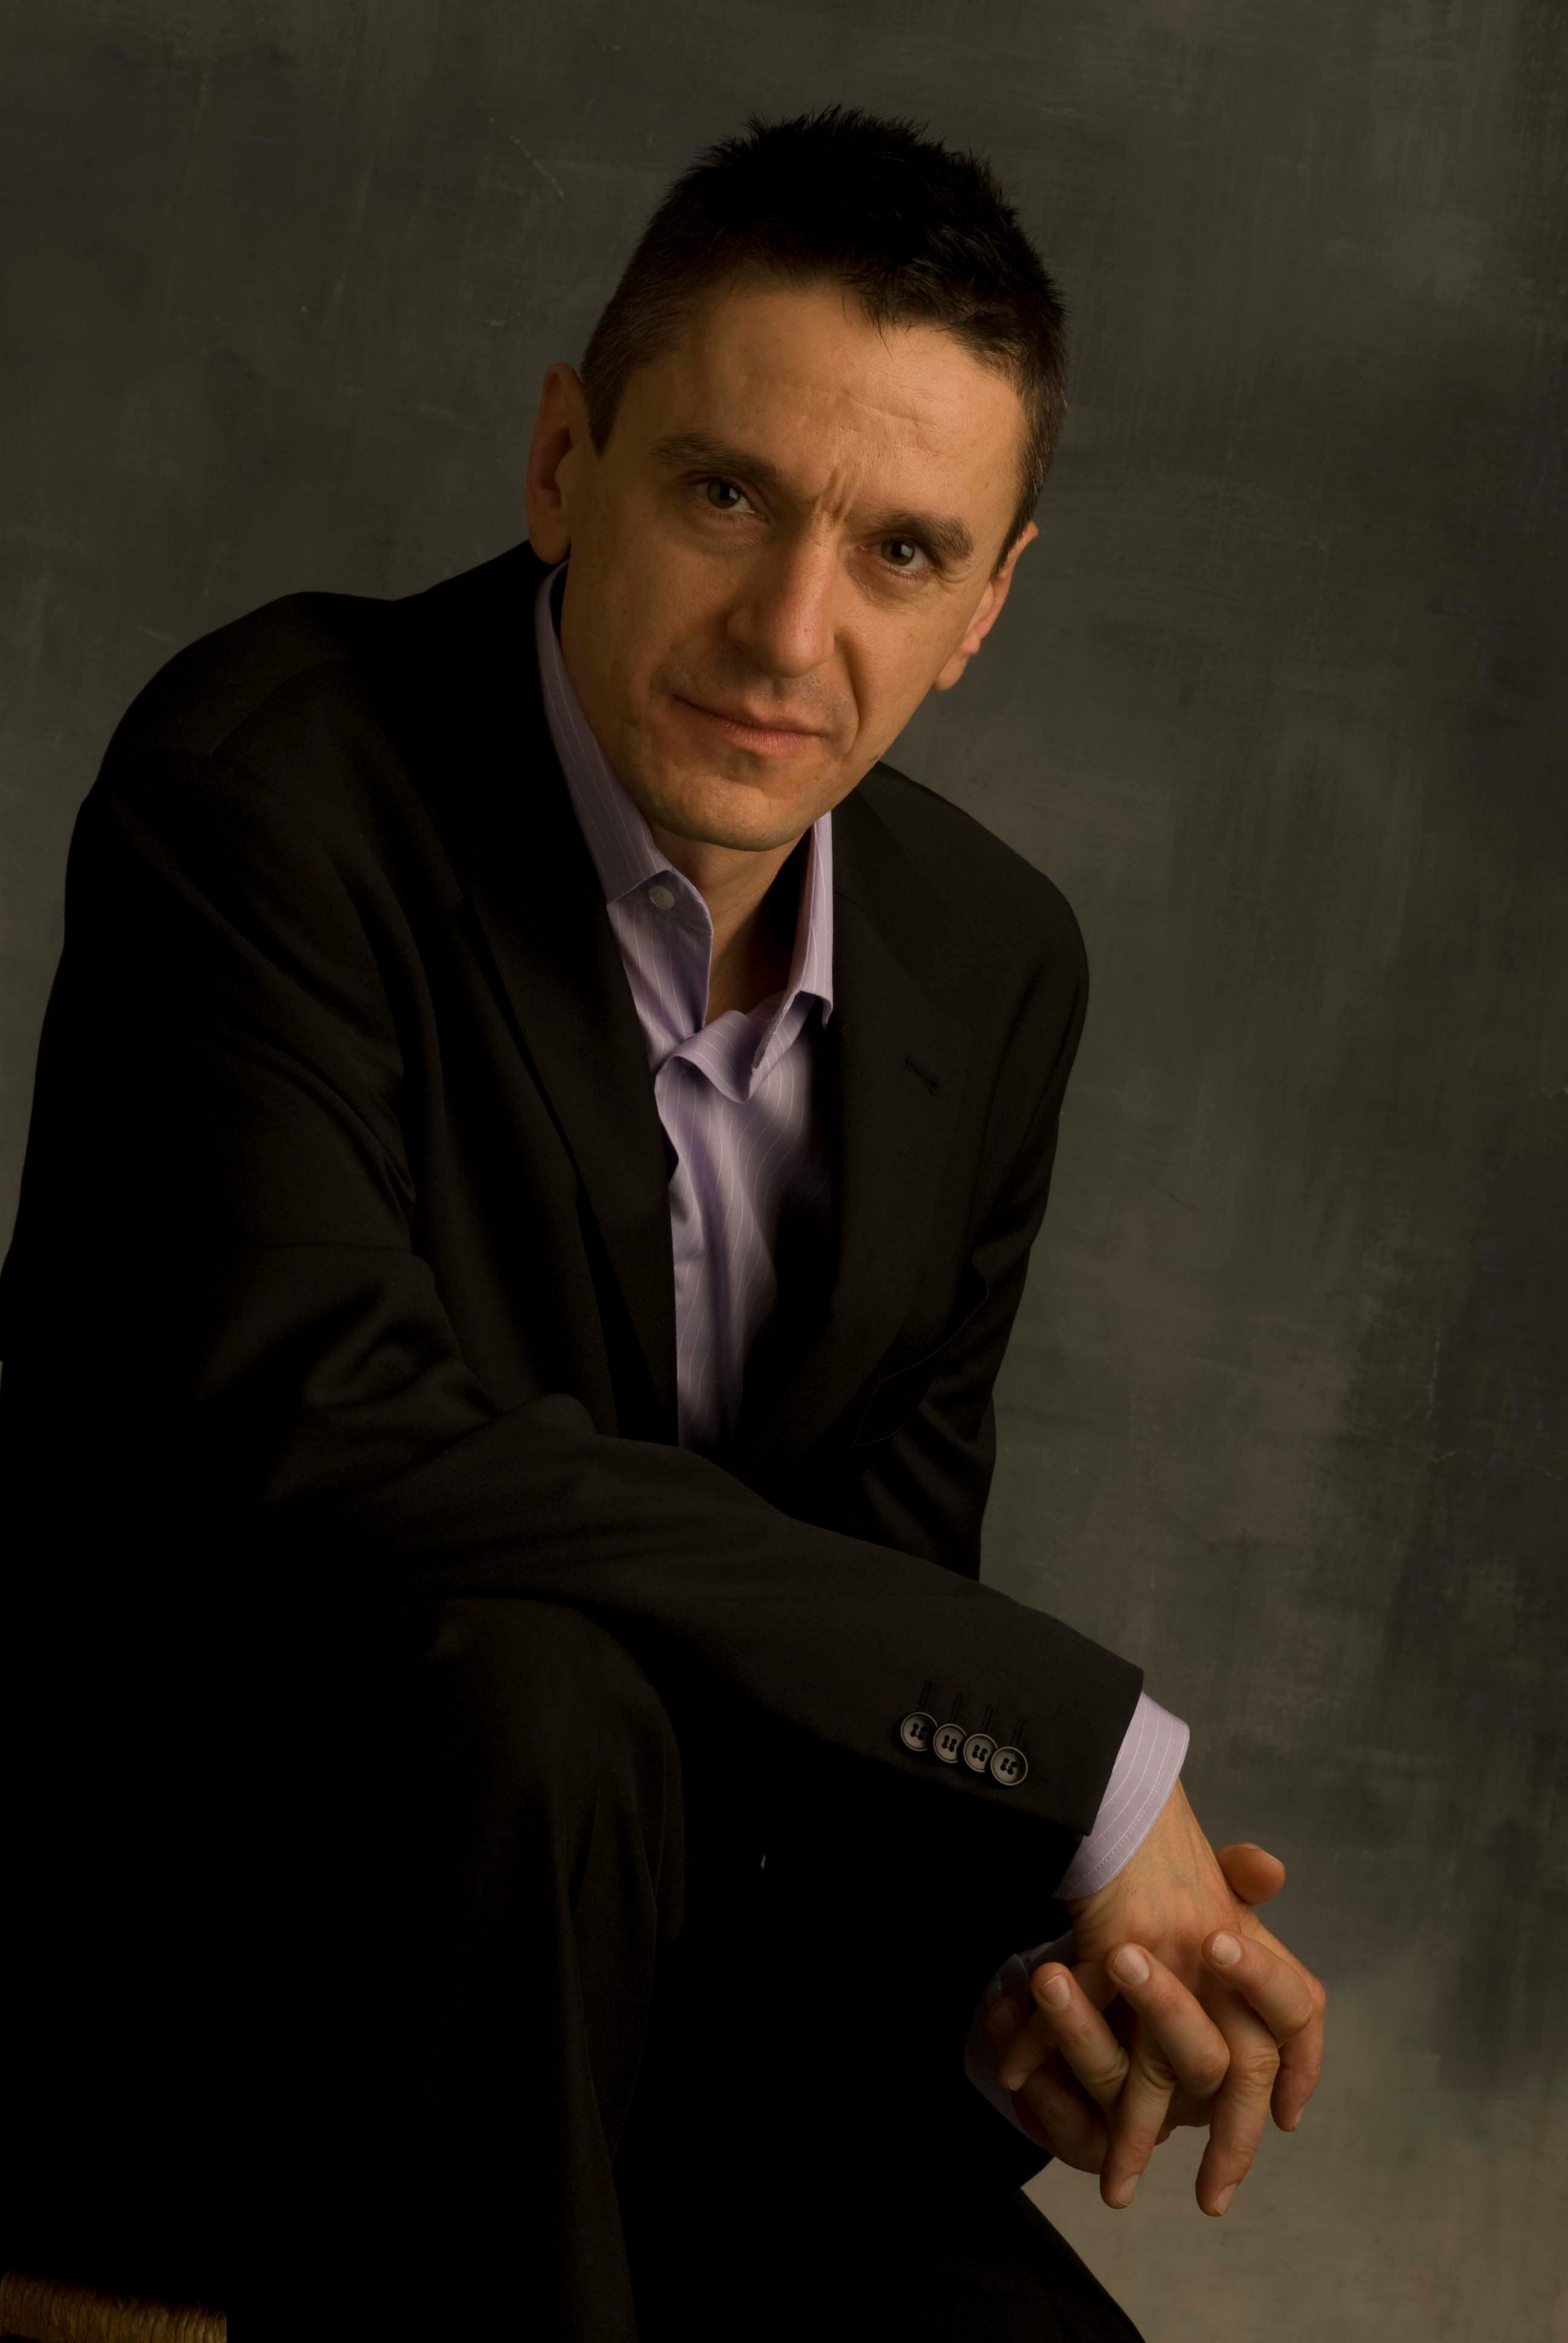 Péter Sárik, Jazz pianist, Composer, Teacher